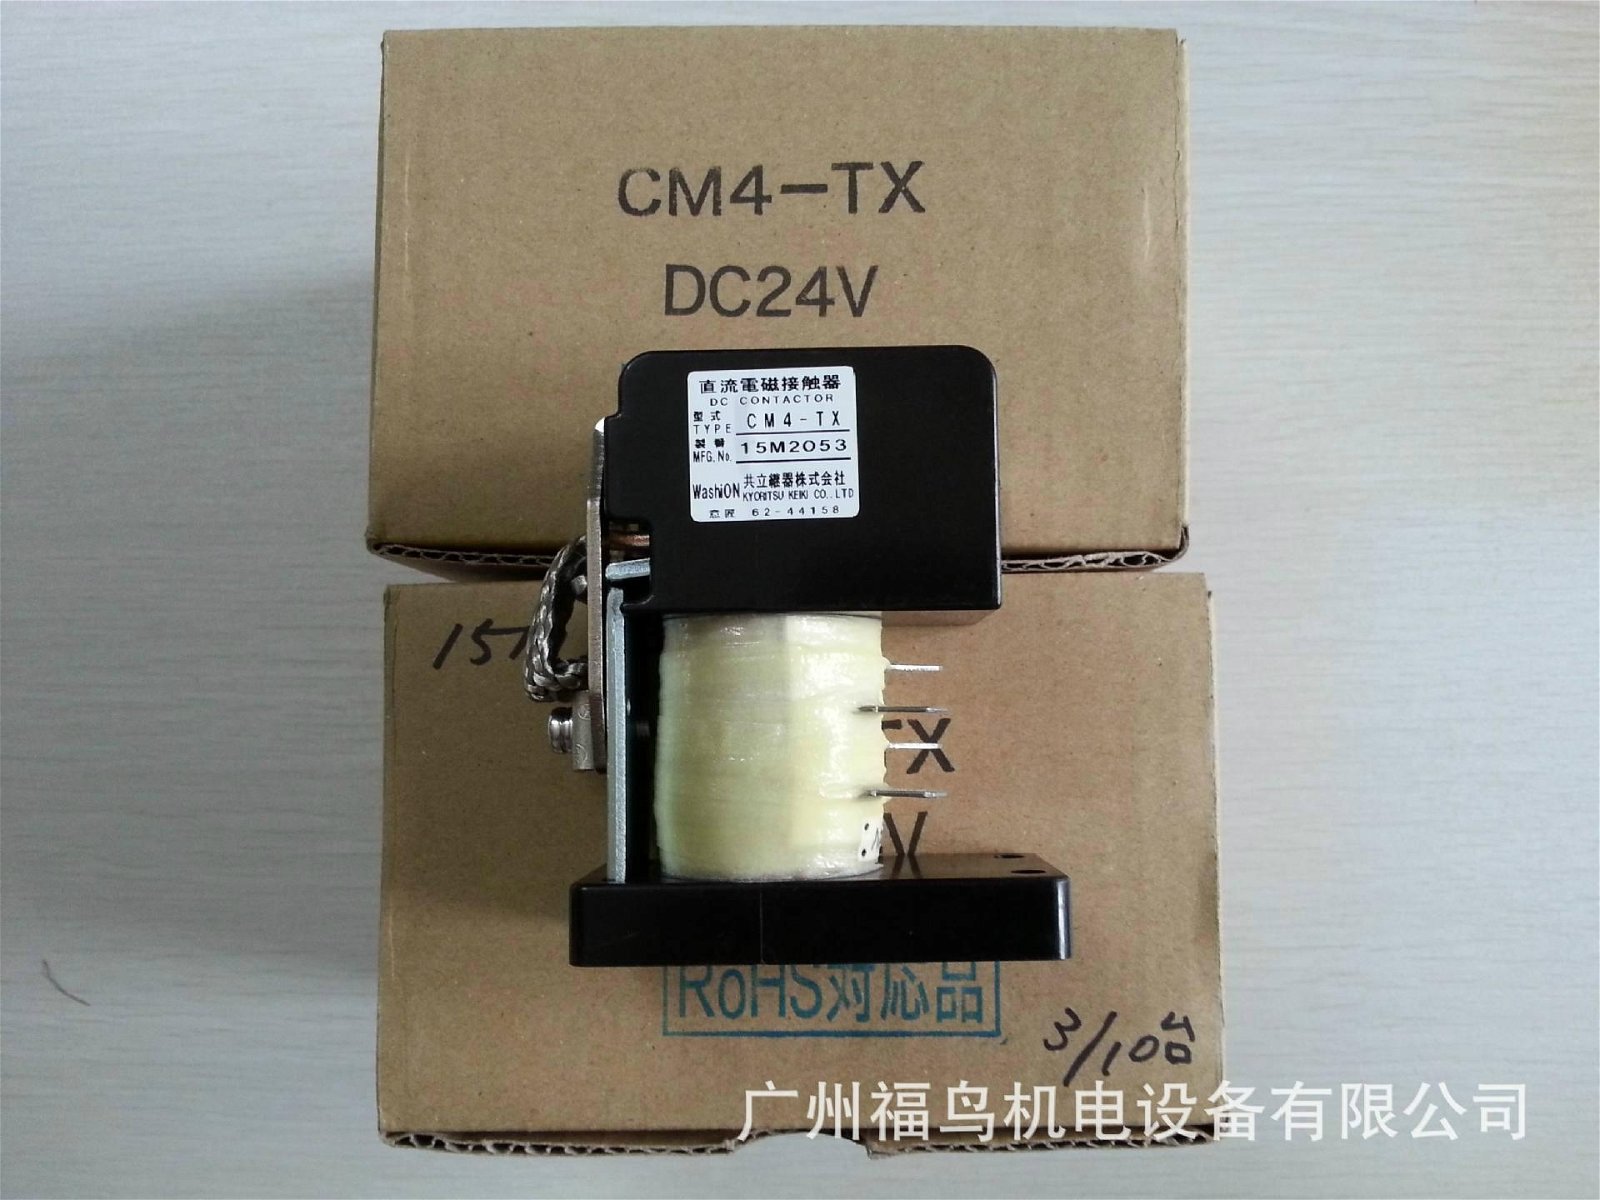 共立直流电磁接触器, 型号: CM4-TX